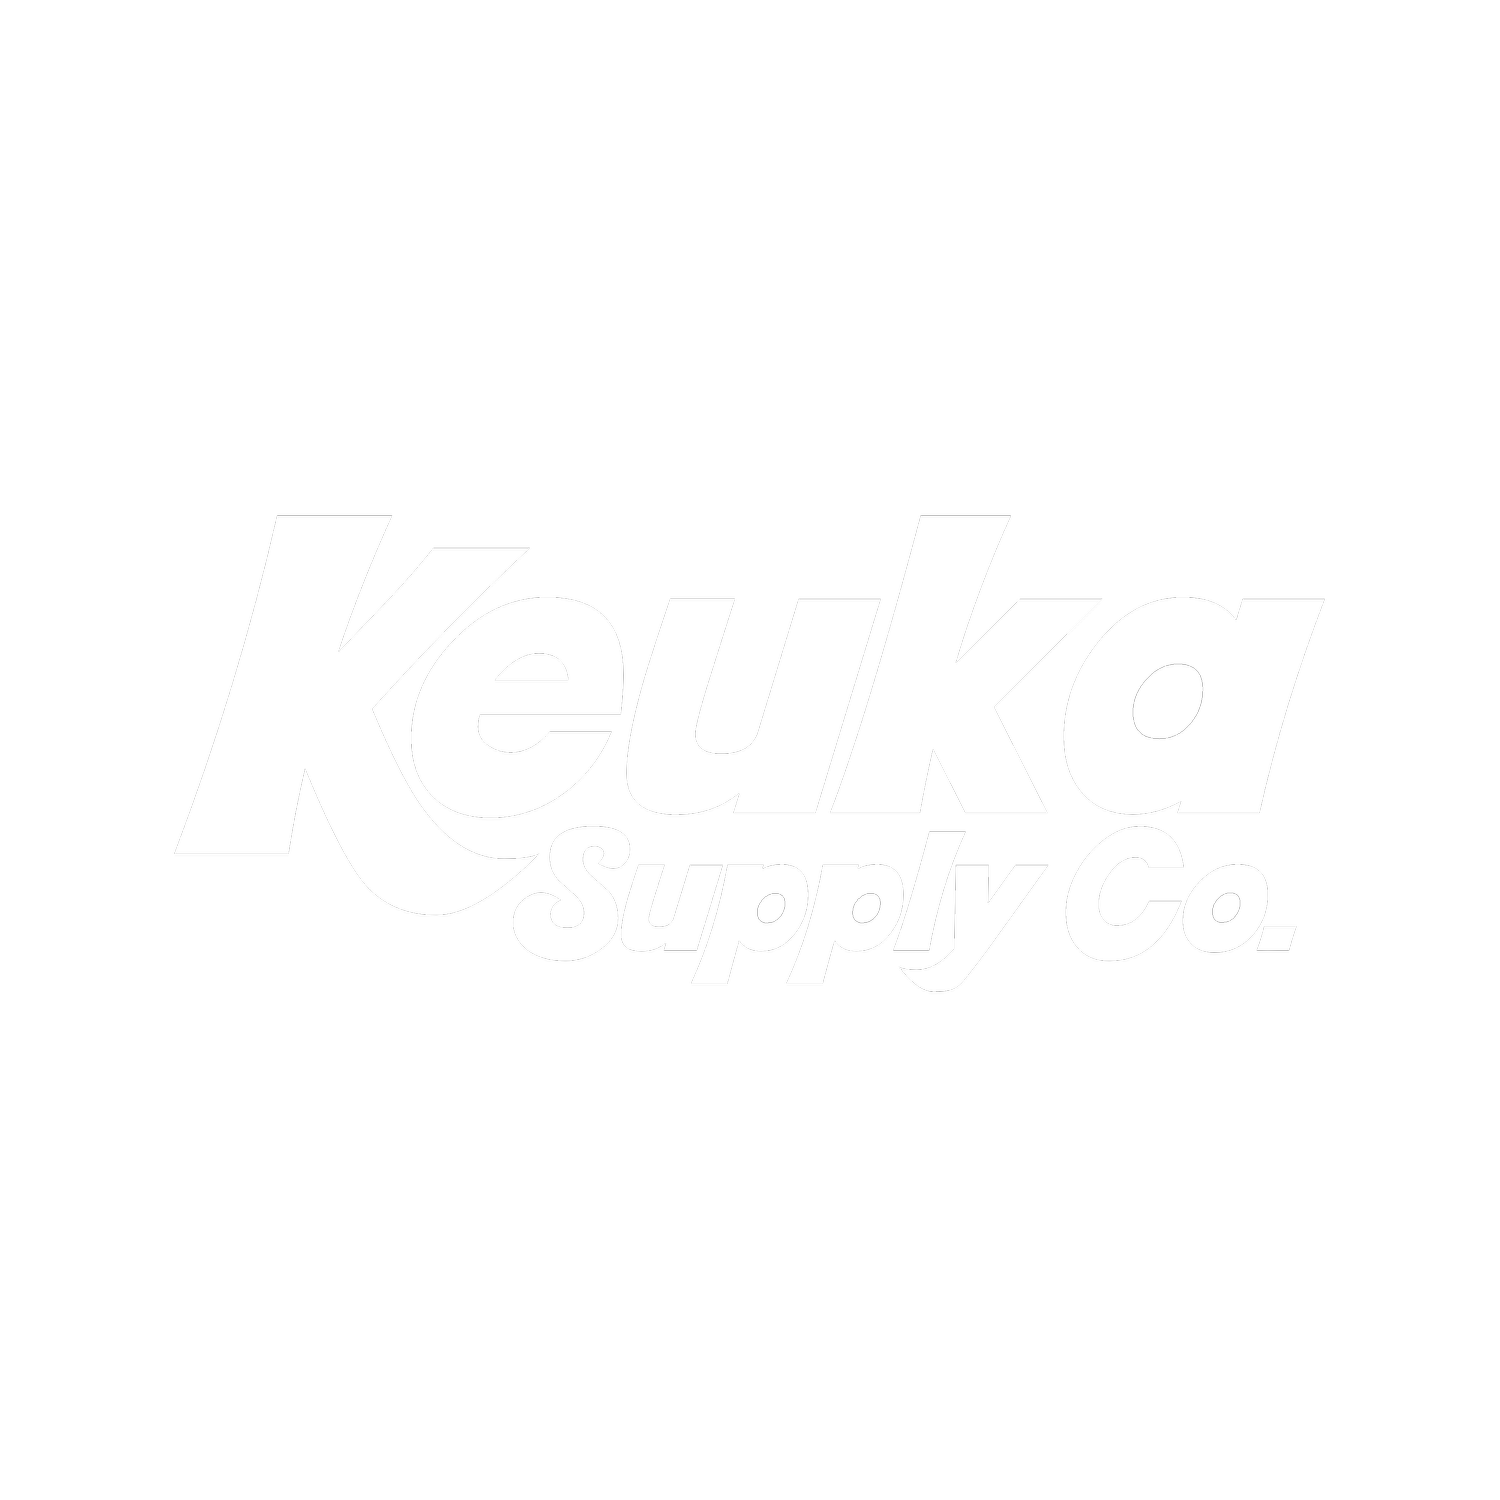 Keuka Supply Co.